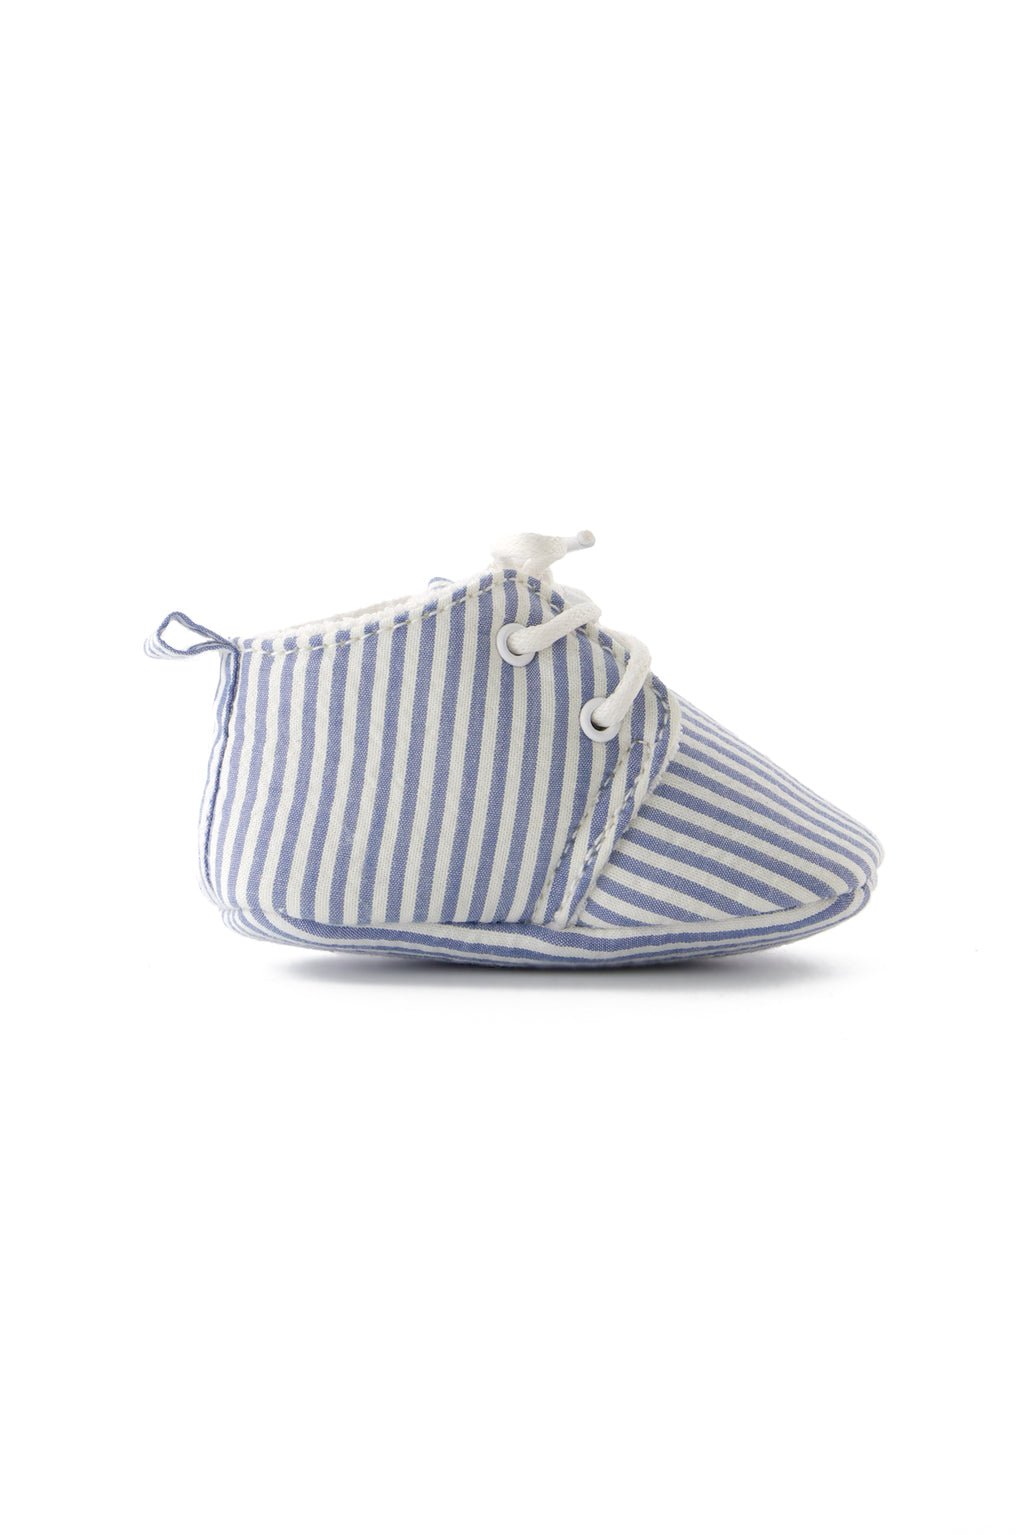 Shoes - Azure Stripes